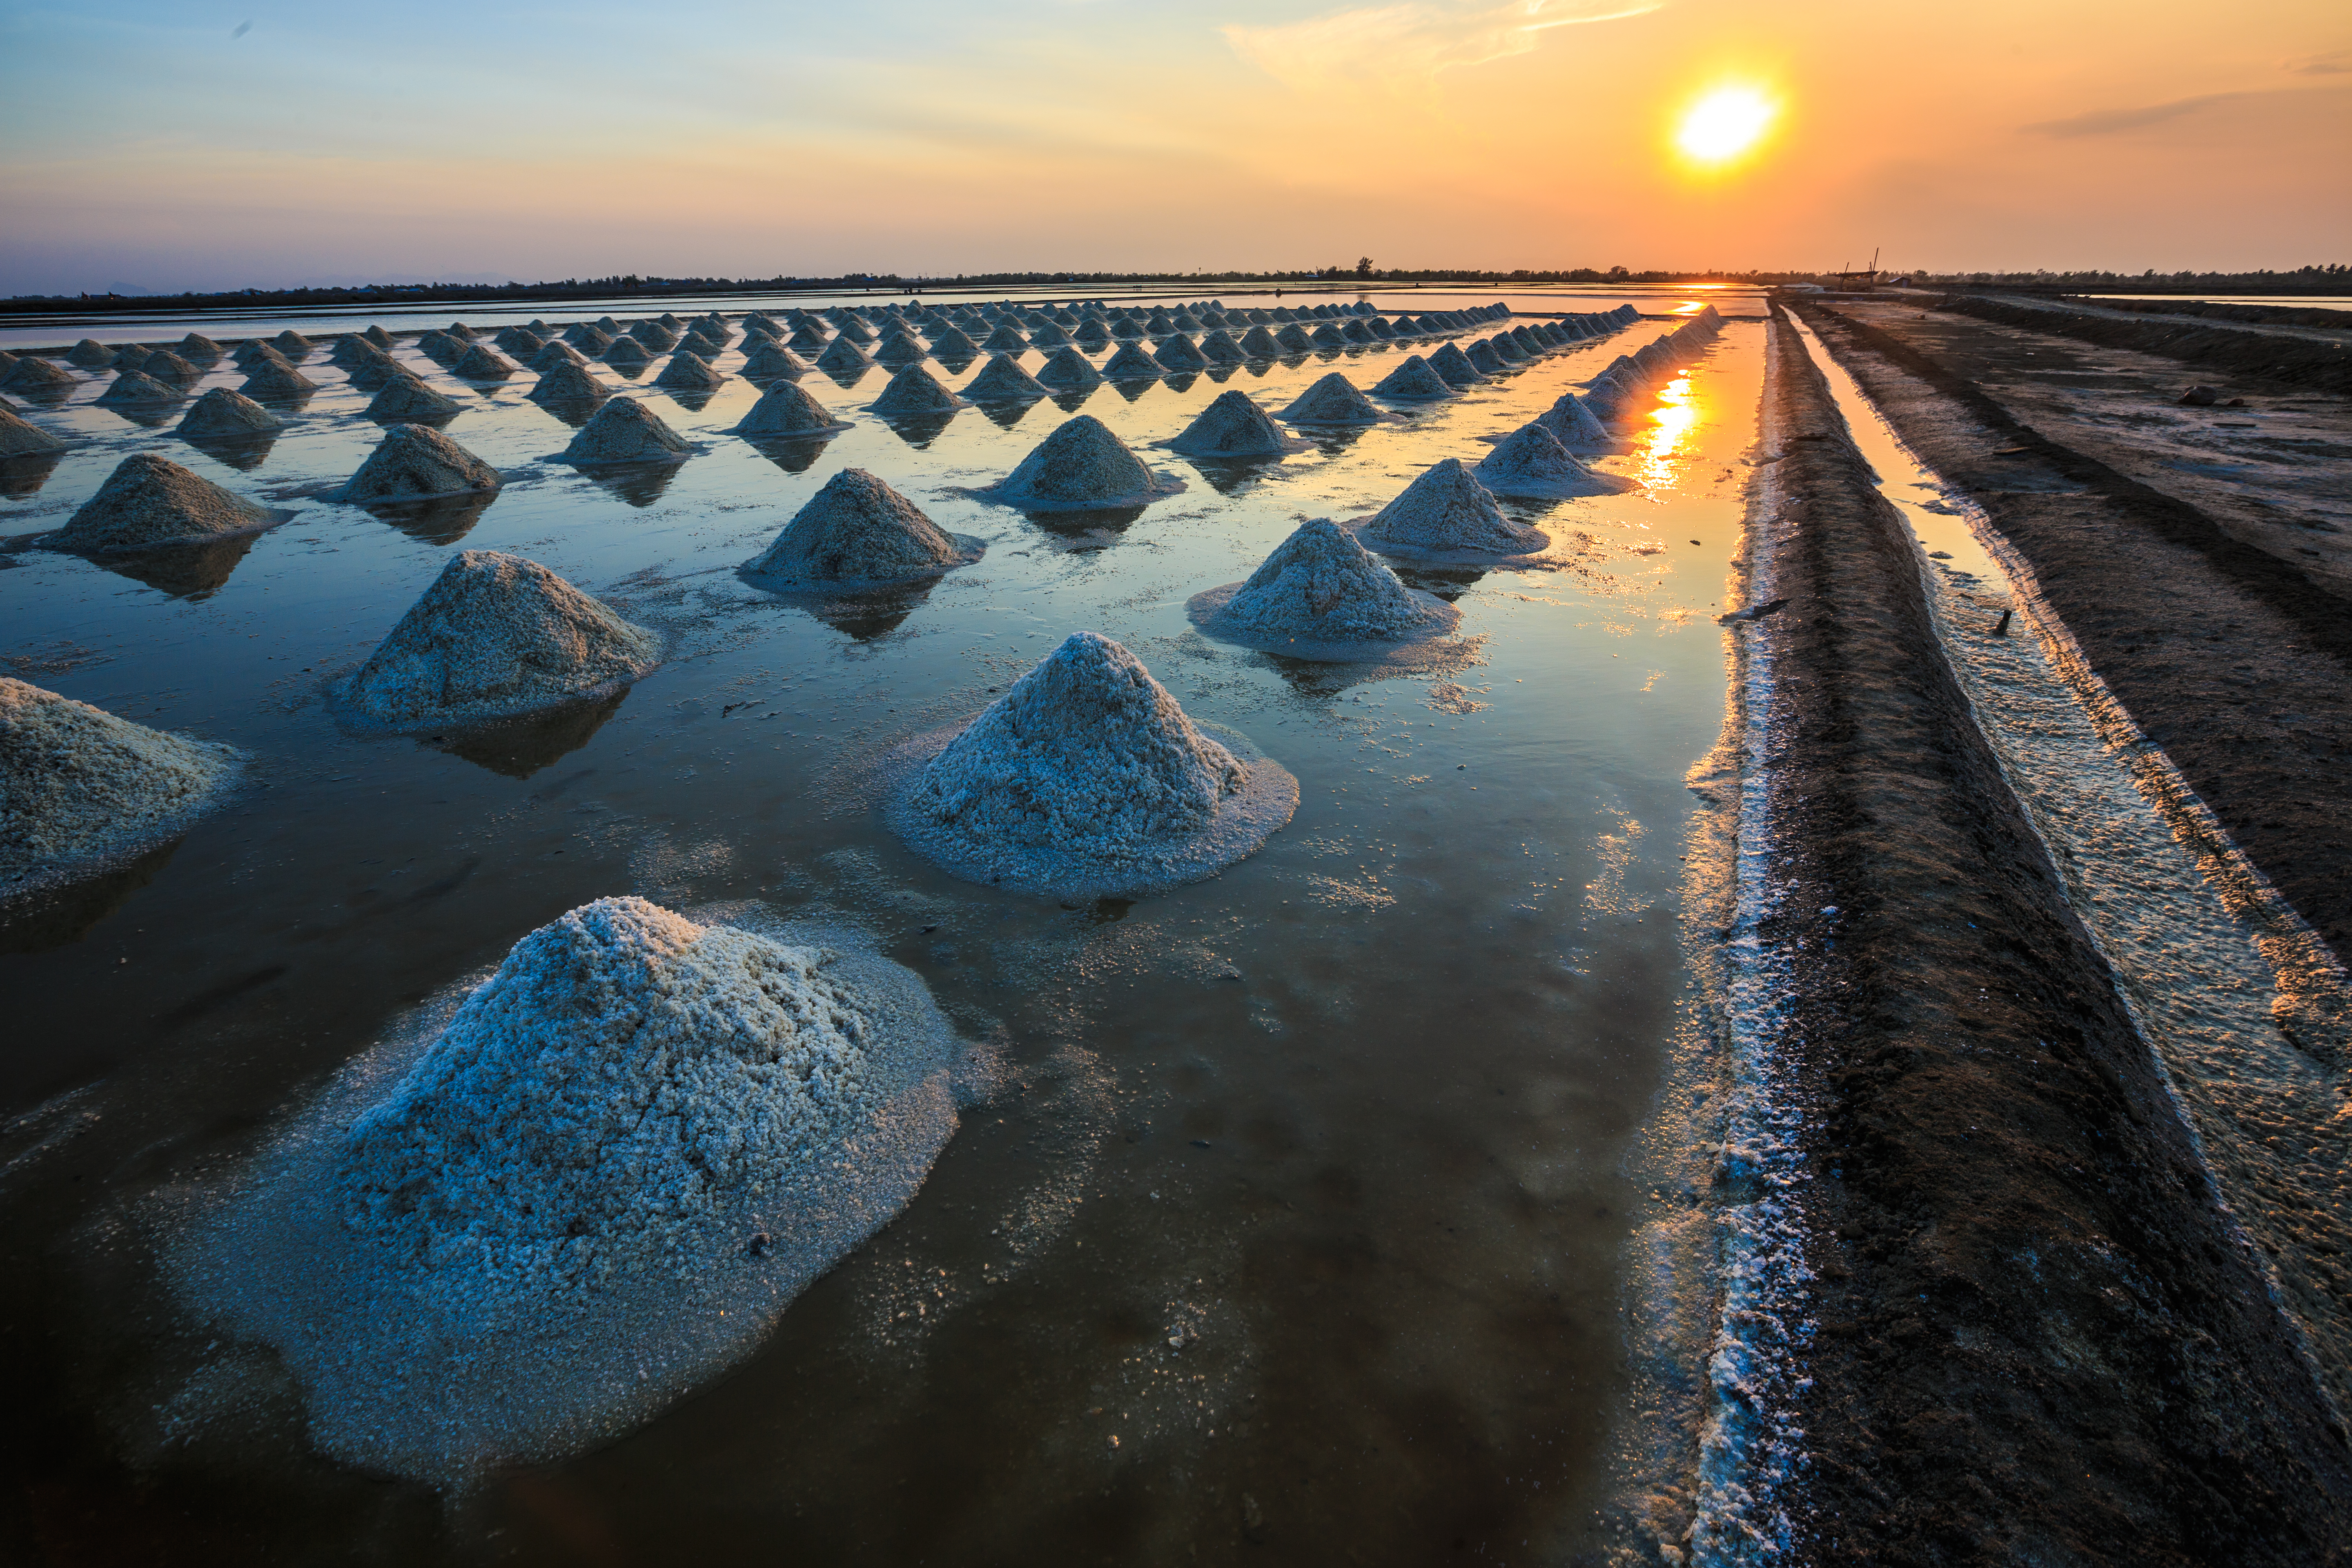 Evaporated salt piles on a beach